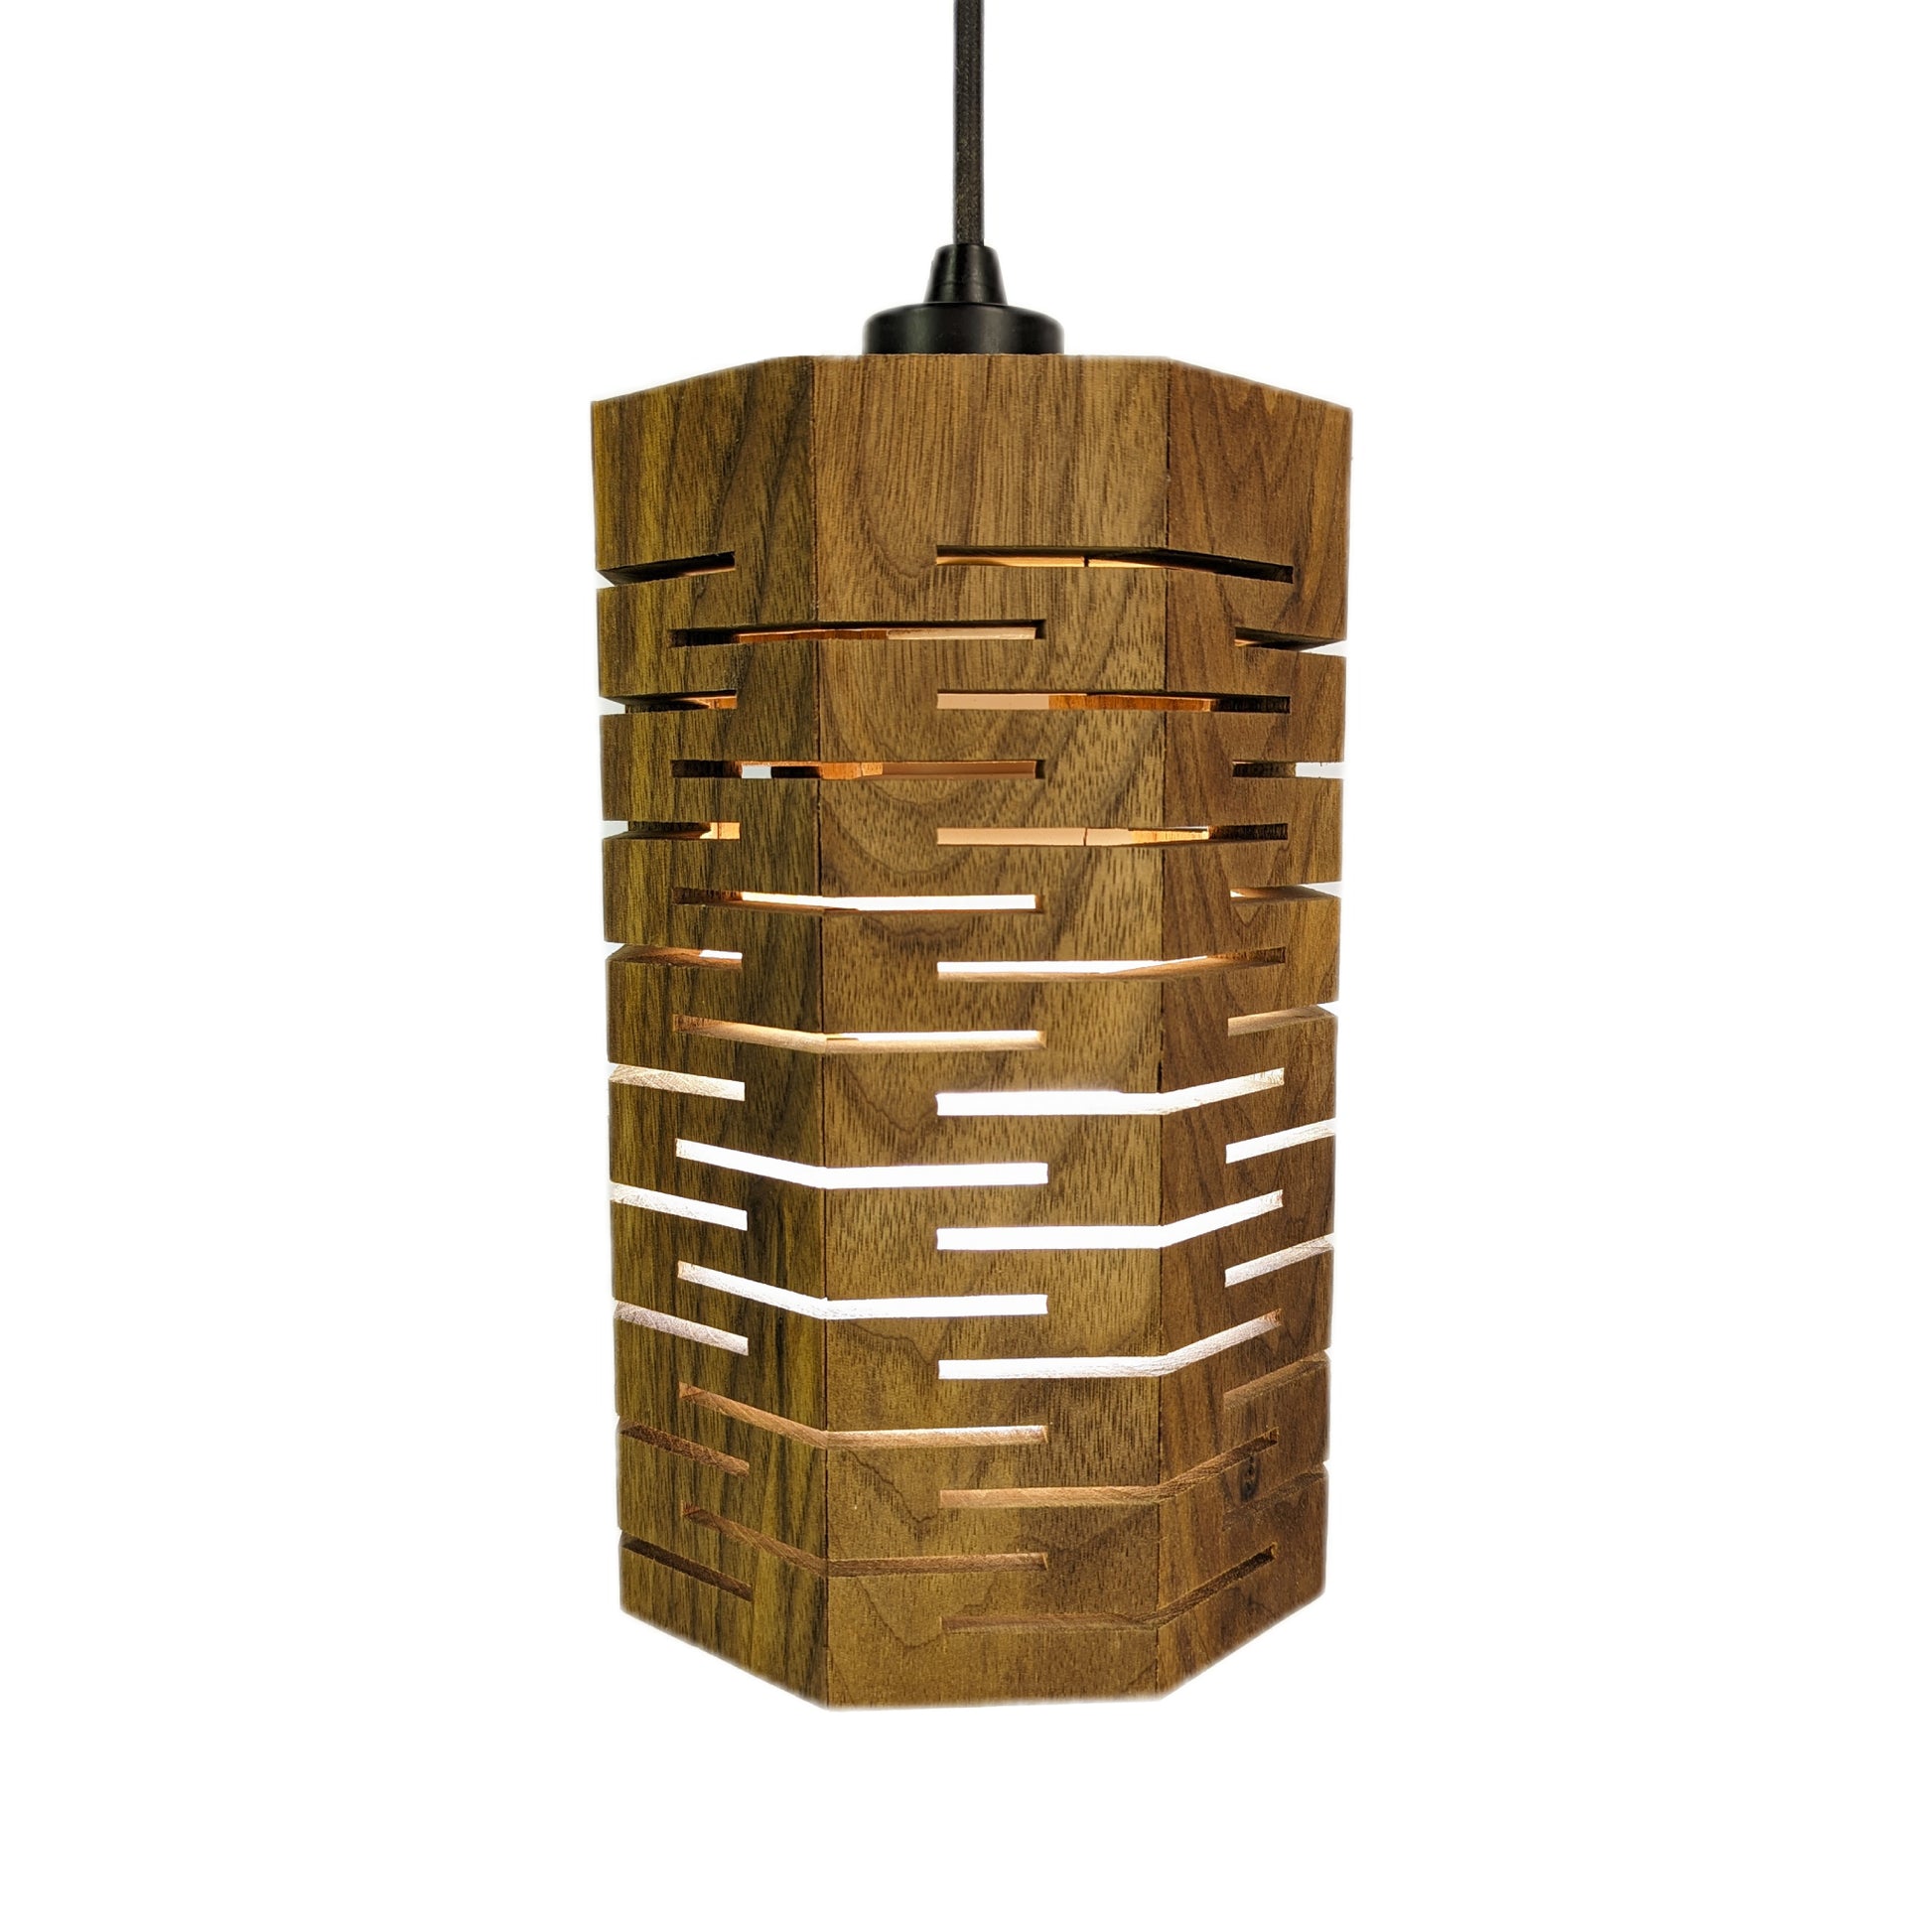 Strake Studio Henlopen Pendant Lamp made from Walnut wood.